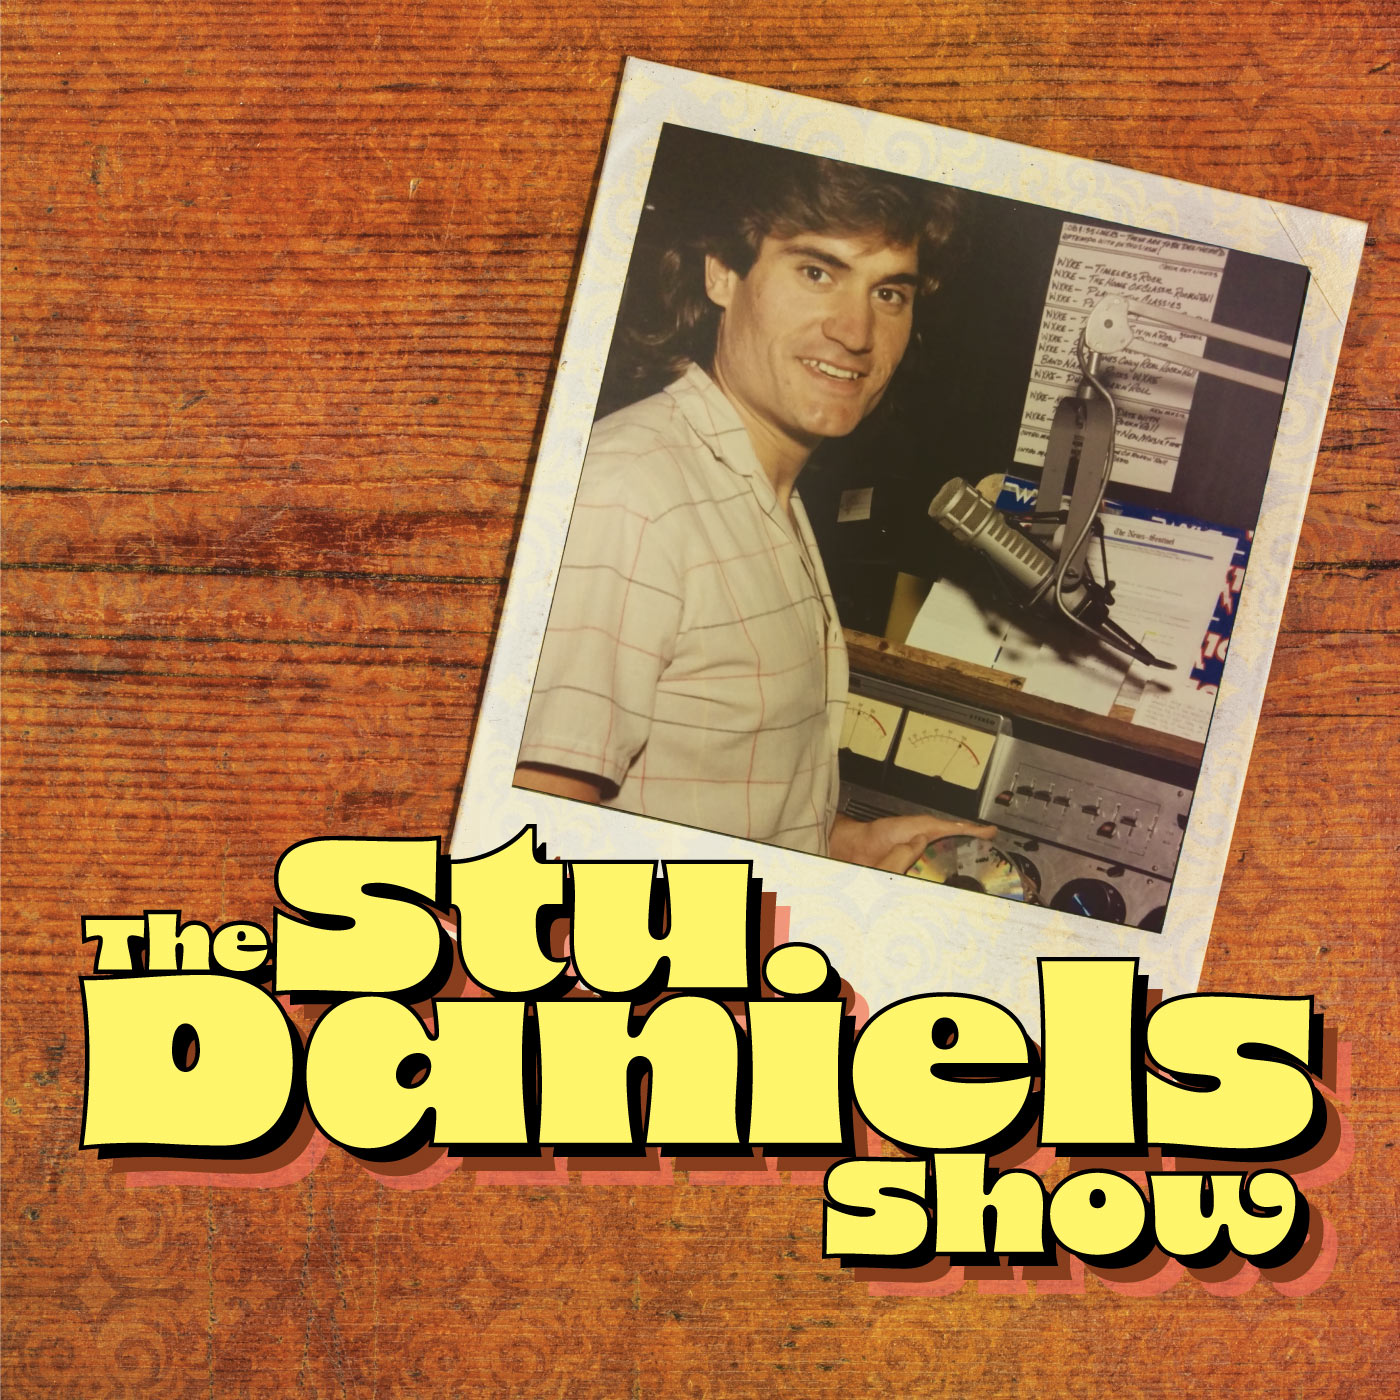 The Stu Daniels Show